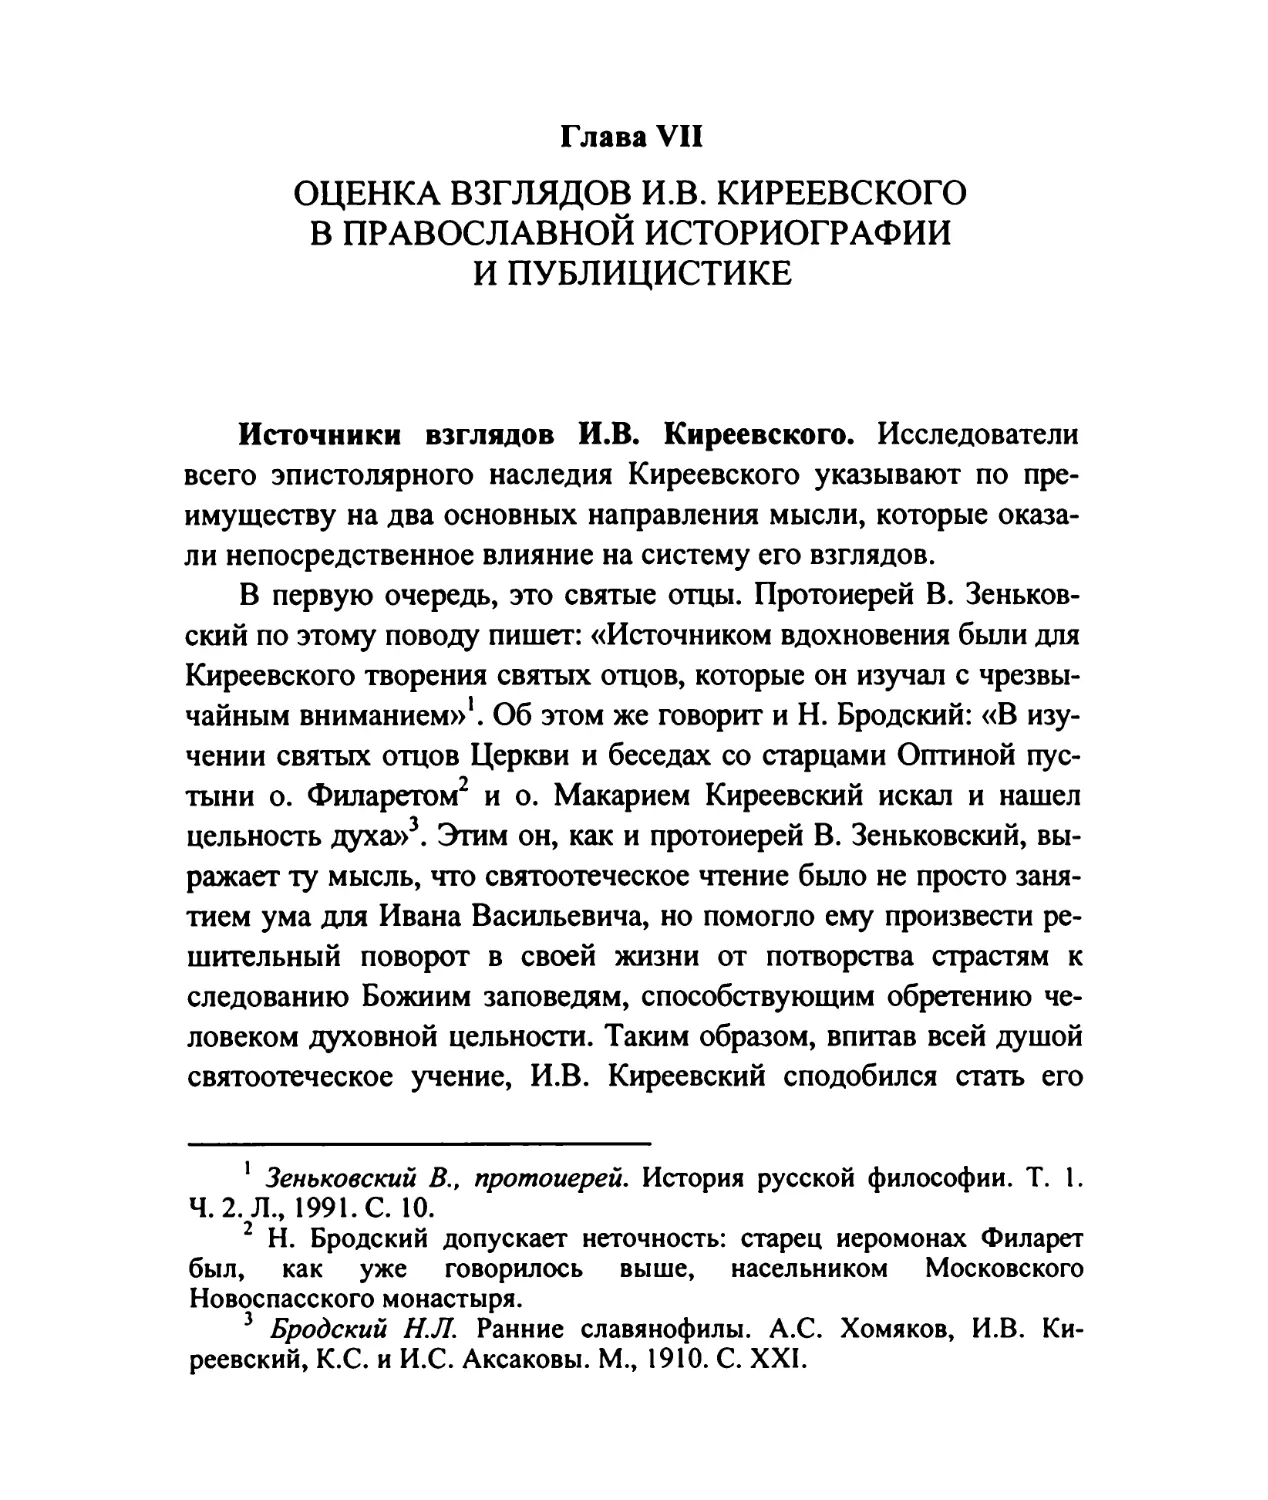 Глава VII. Оценка взглядов И.В.Киреевского в православной историографии и публицистике